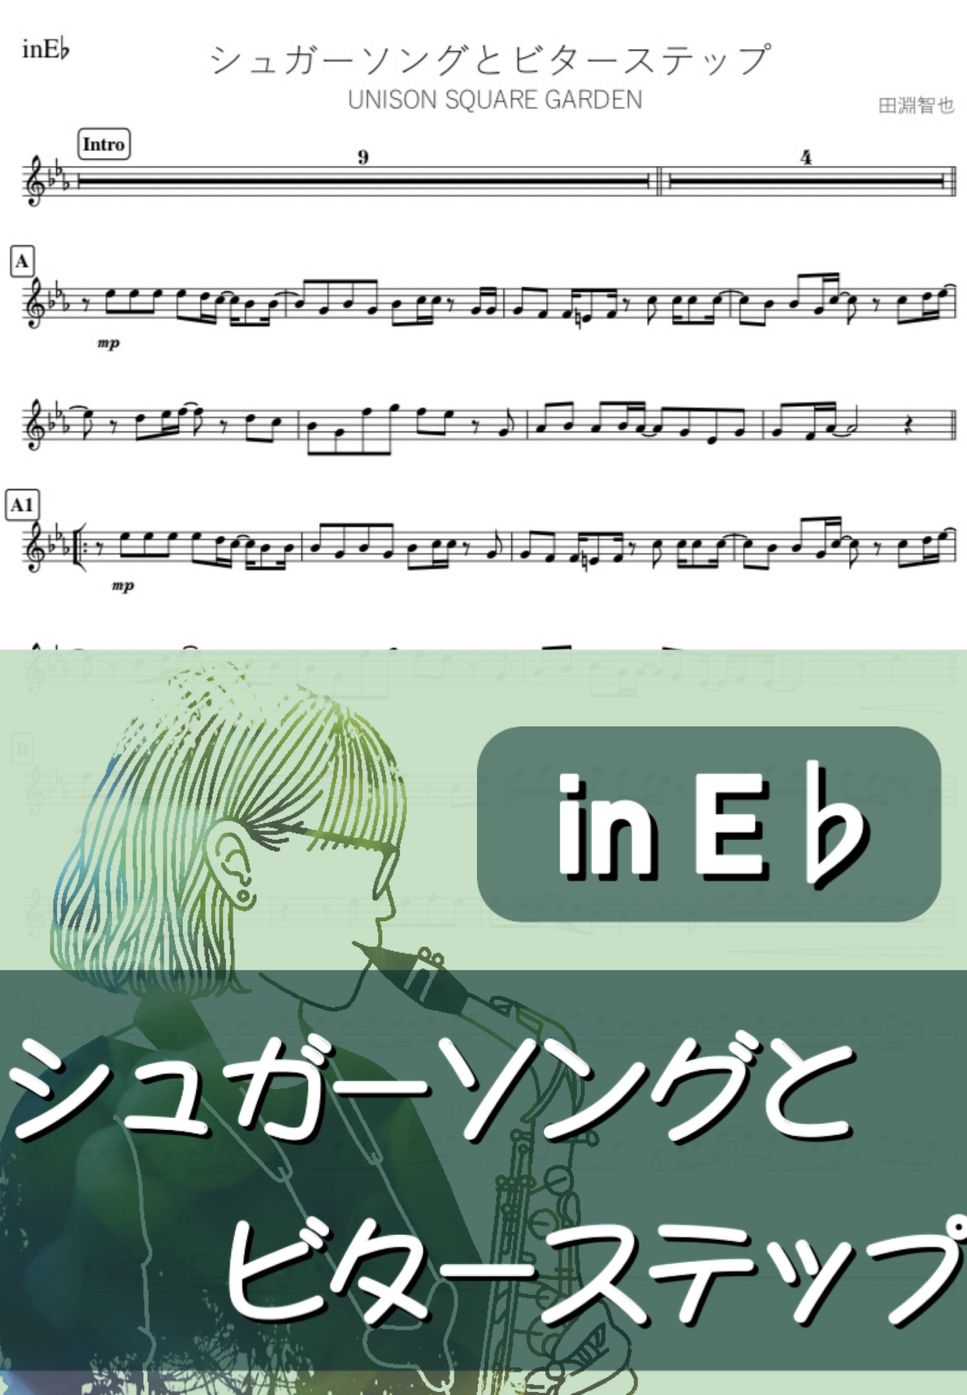 血界戦線 - シュガーソングとビターステップ (E♭) by kanamusic